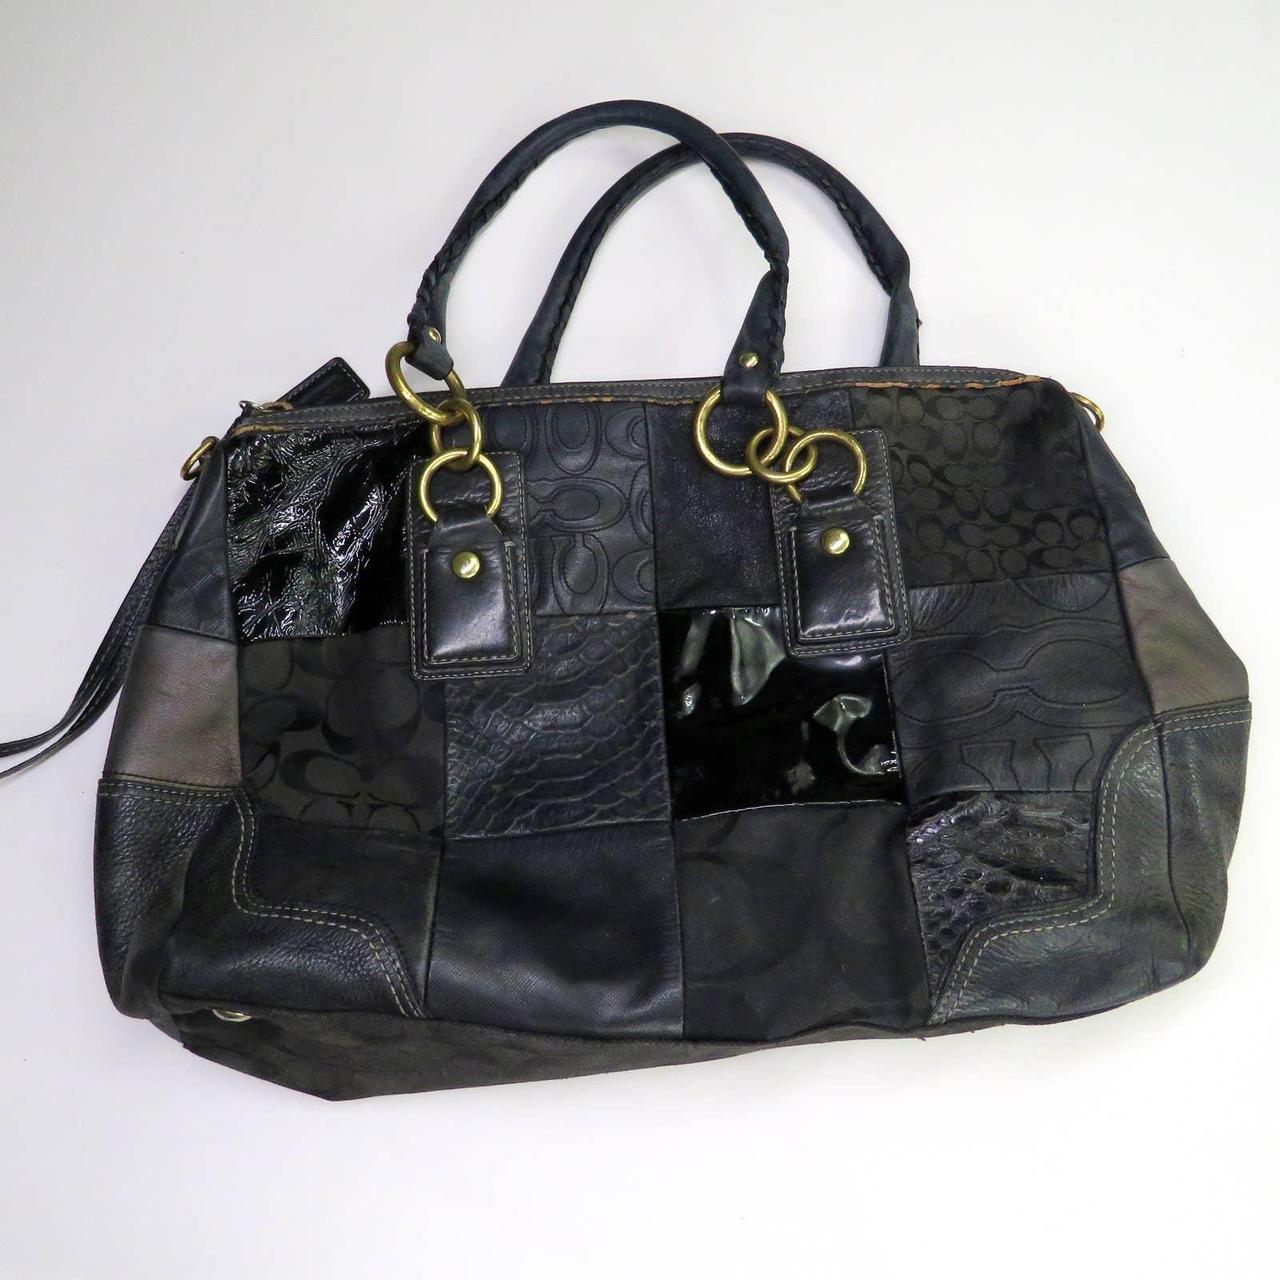 Circa 1990s Early 2000s Vintage Coach Handbag. Black... - Depop